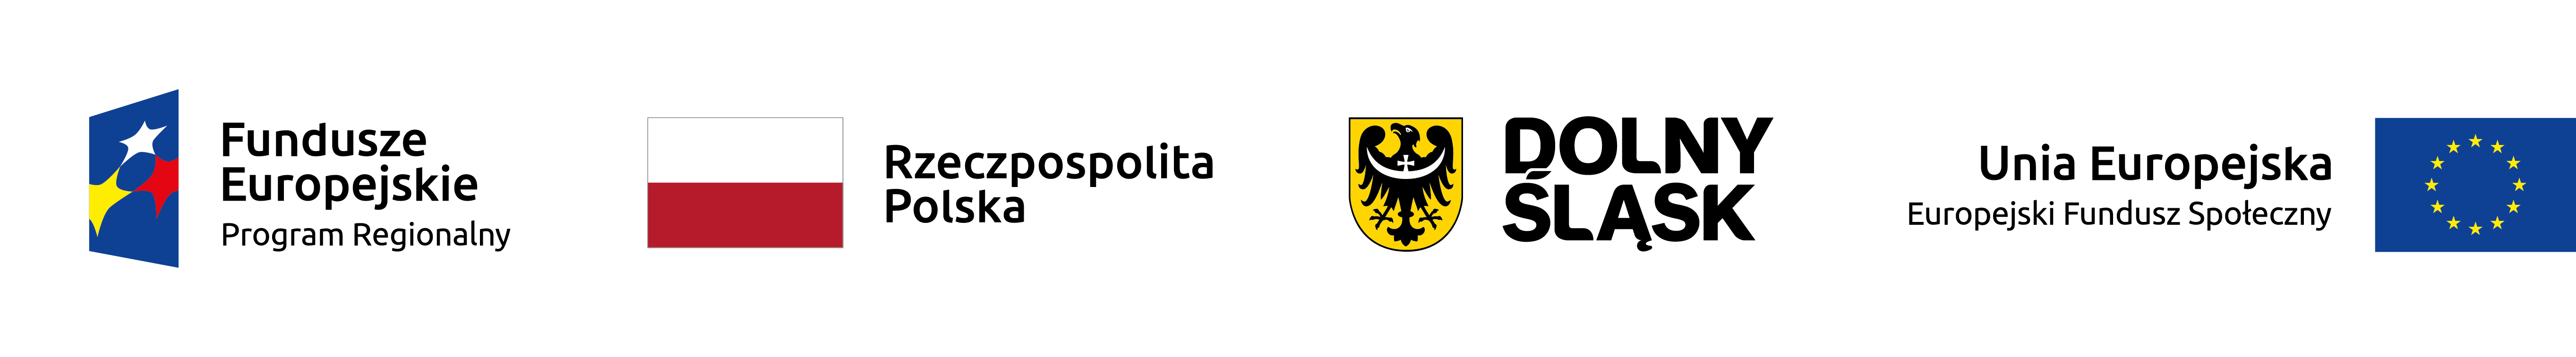 logo dolnego śląska, Flaga Polski, logo projektów unijnych, flaga UE